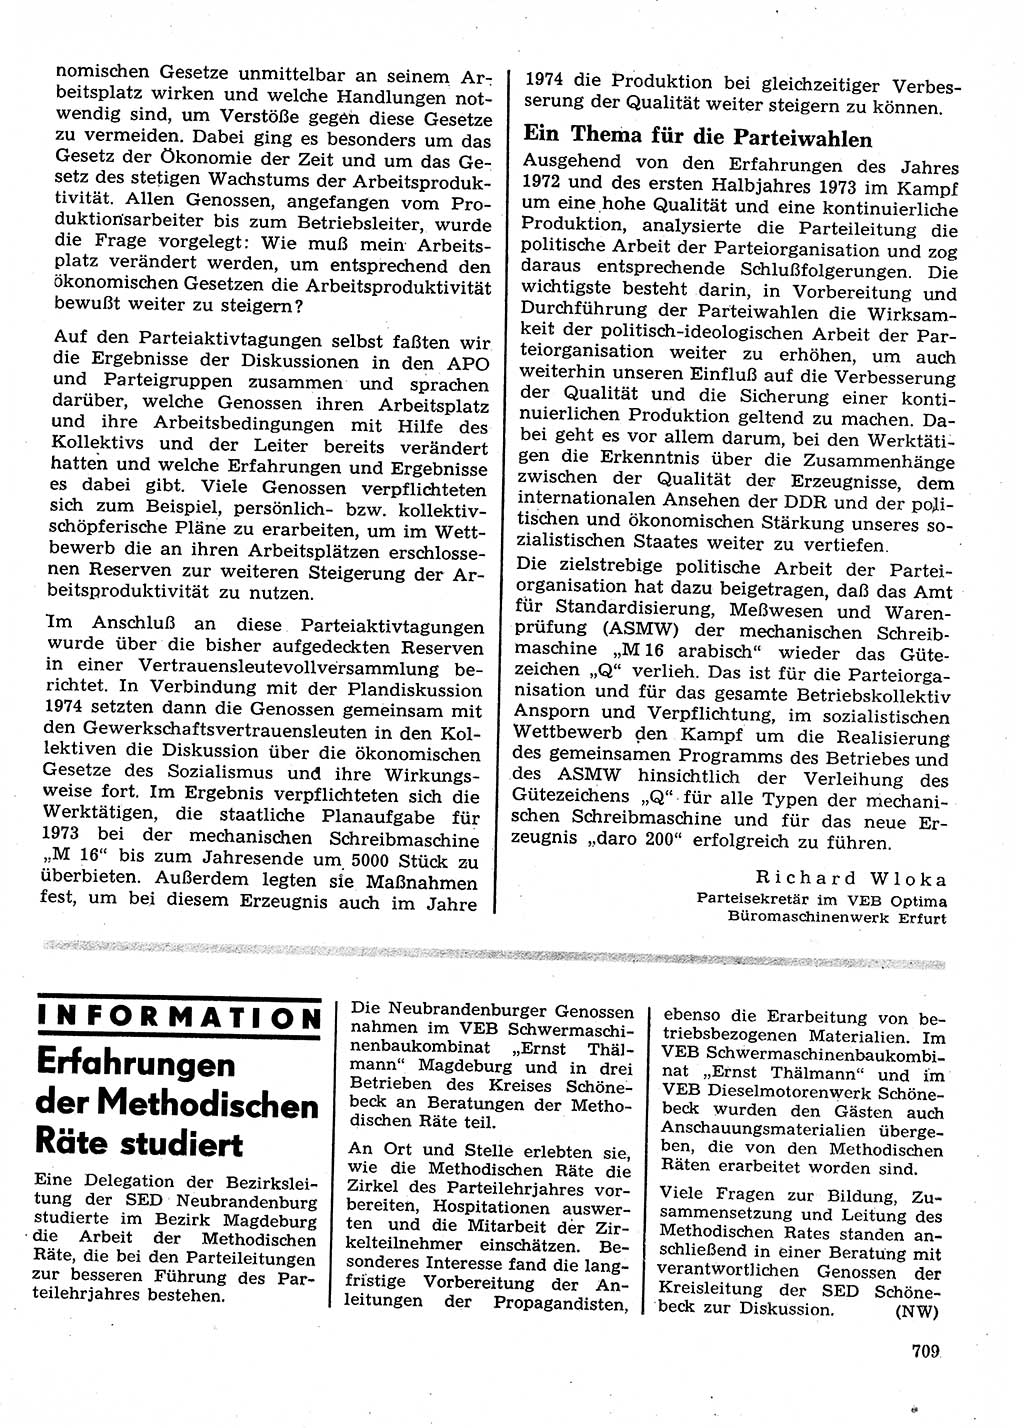 Neuer Weg (NW), Organ des Zentralkomitees (ZK) der SED (Sozialistische Einheitspartei Deutschlands) für Fragen des Parteilebens, 28. Jahrgang [Deutsche Demokratische Republik (DDR)] 1973, Seite 709 (NW ZK SED DDR 1973, S. 709)